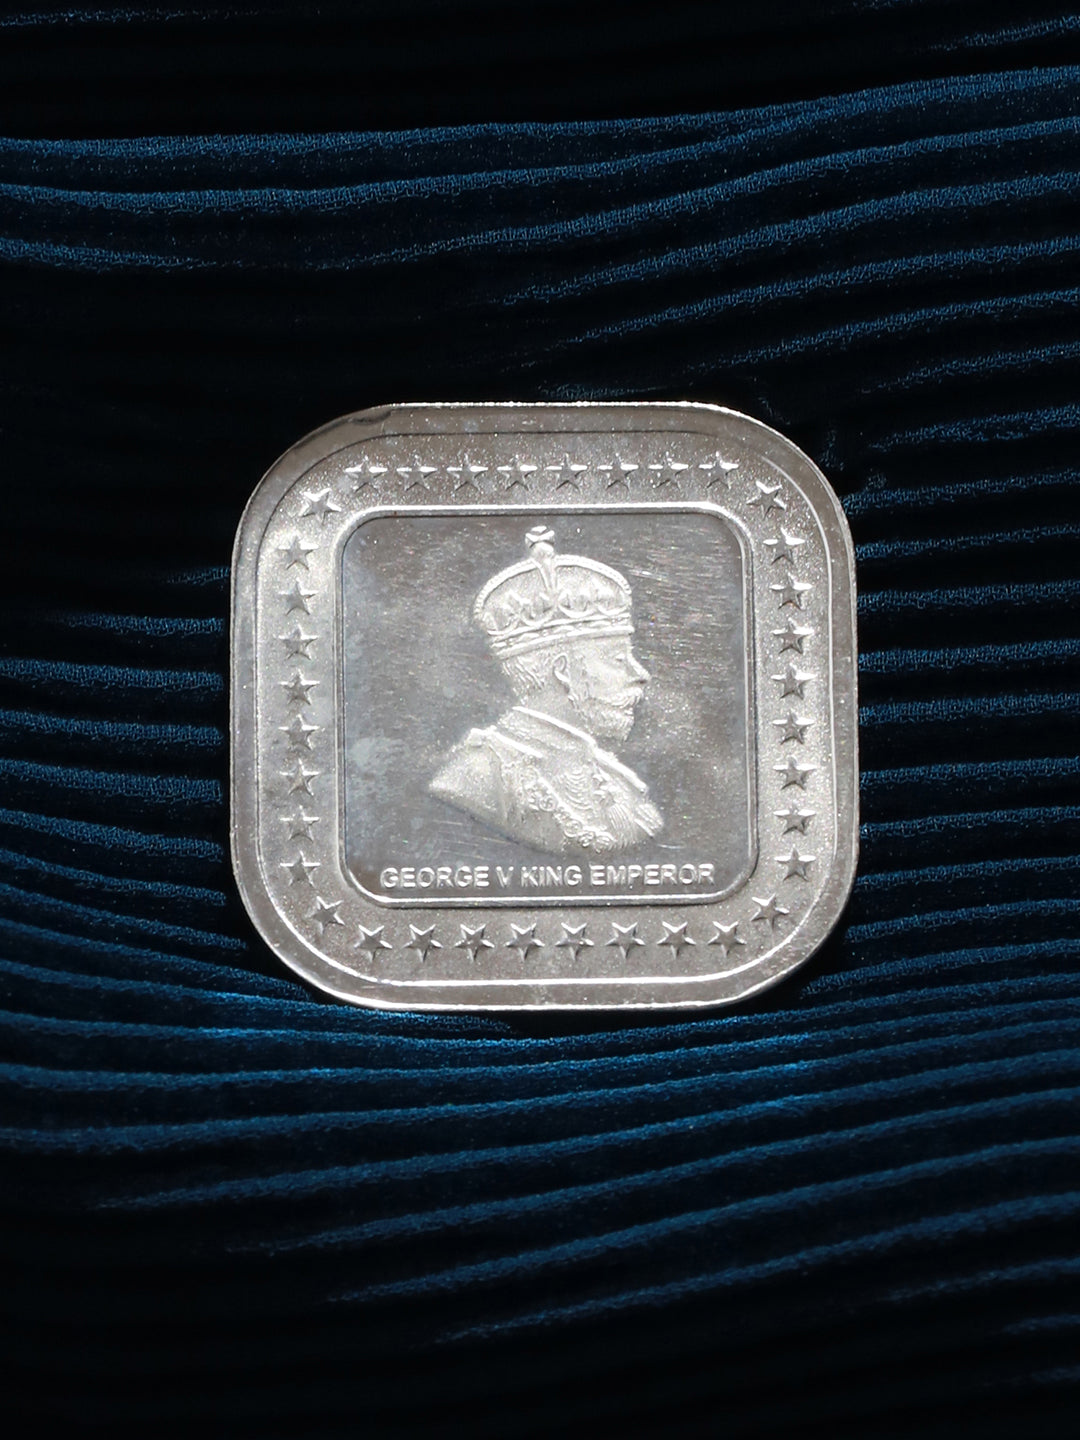 999 Silver Emperor George Square 10 gram Silver Coin